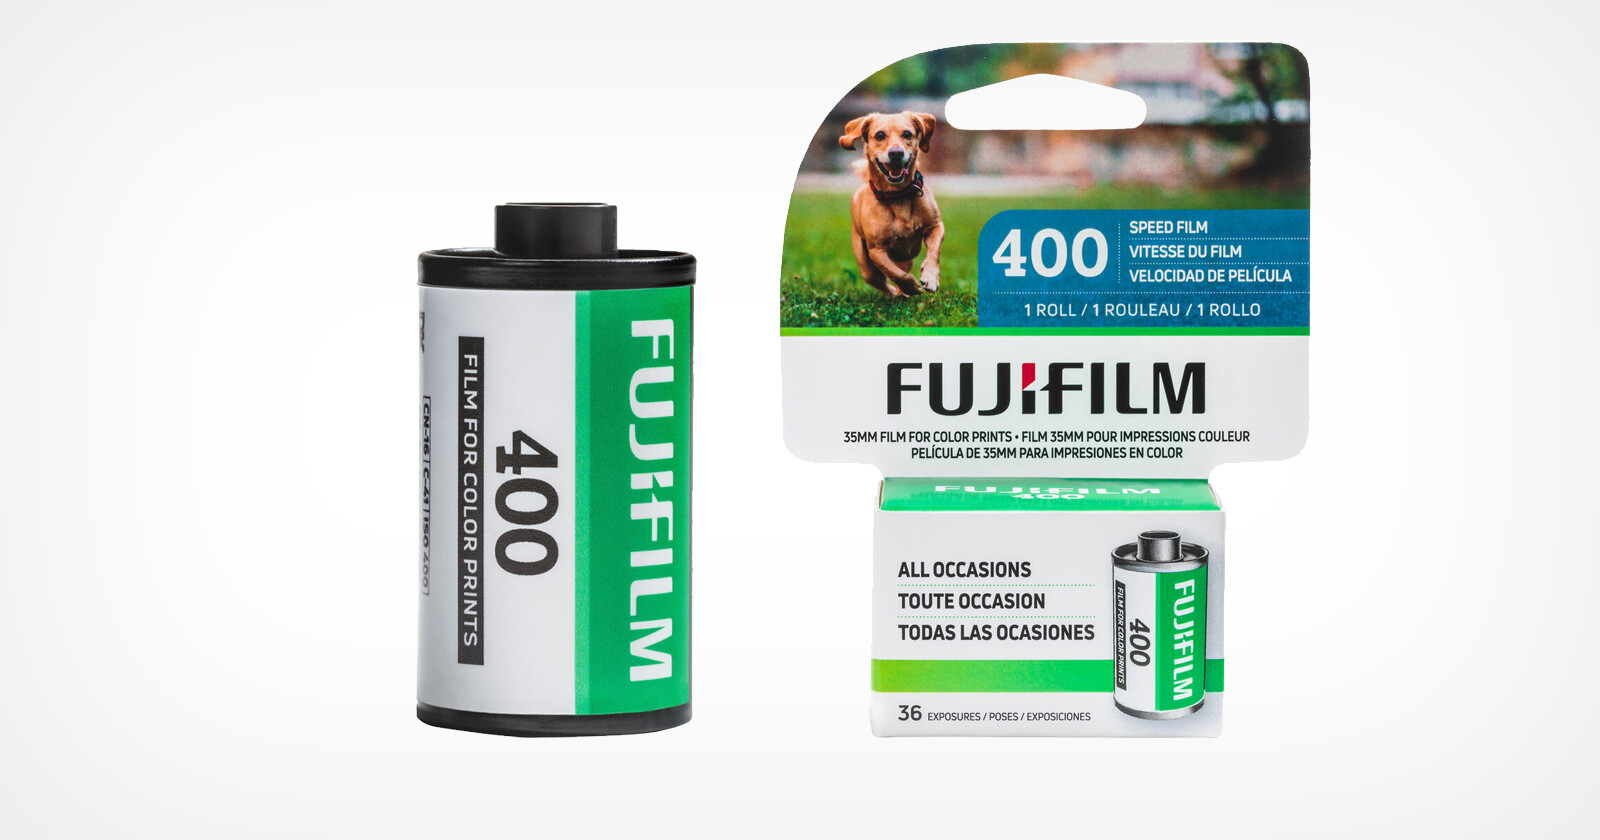  fujifilm 400 negative film probably replaces superia 